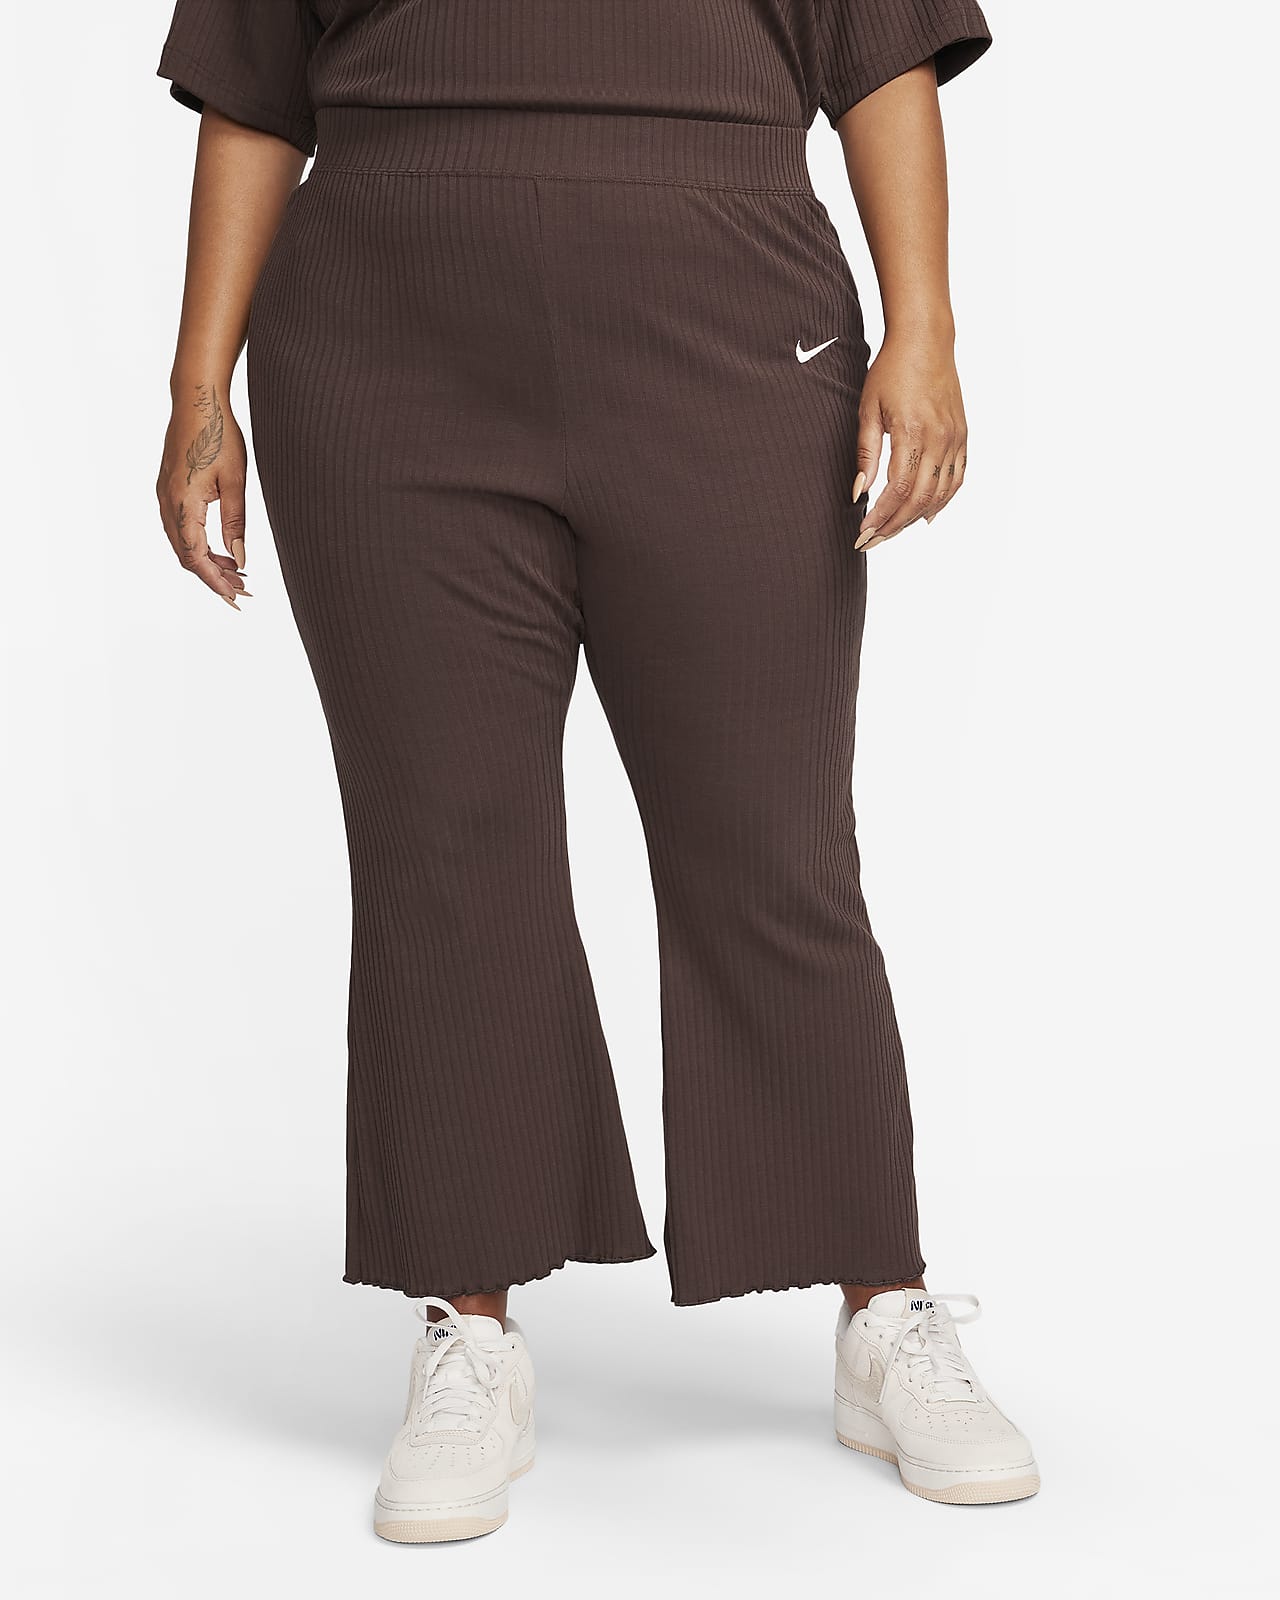 Pantalones cargo tejido de tiro alto para mujer Nike Sportswear Essential.  Nike MX